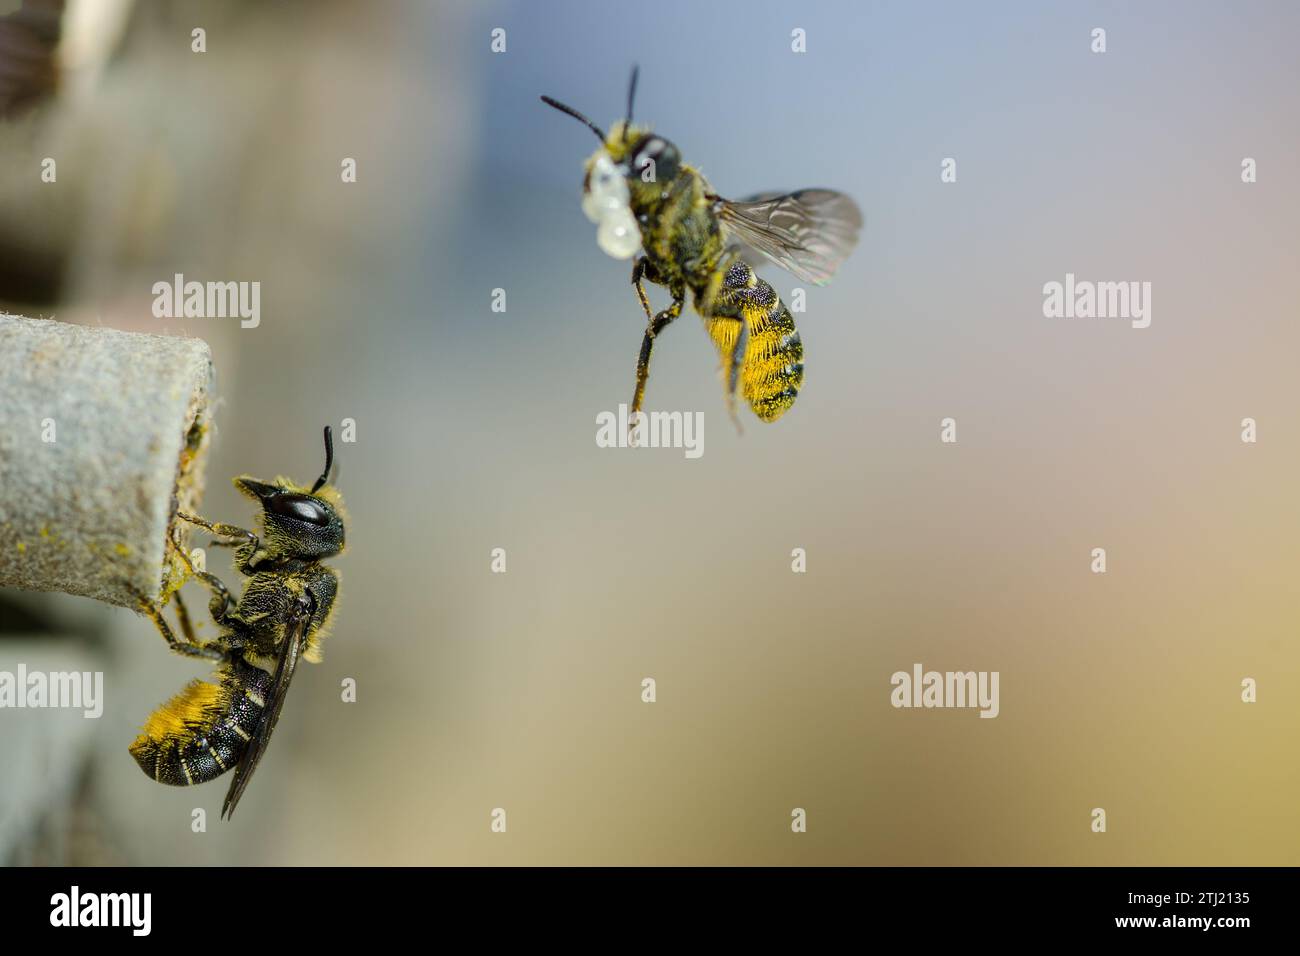 Flying wild bees in front of insect hotel, Fliegende Wildbienen vor Insektenhotel Stock Photo